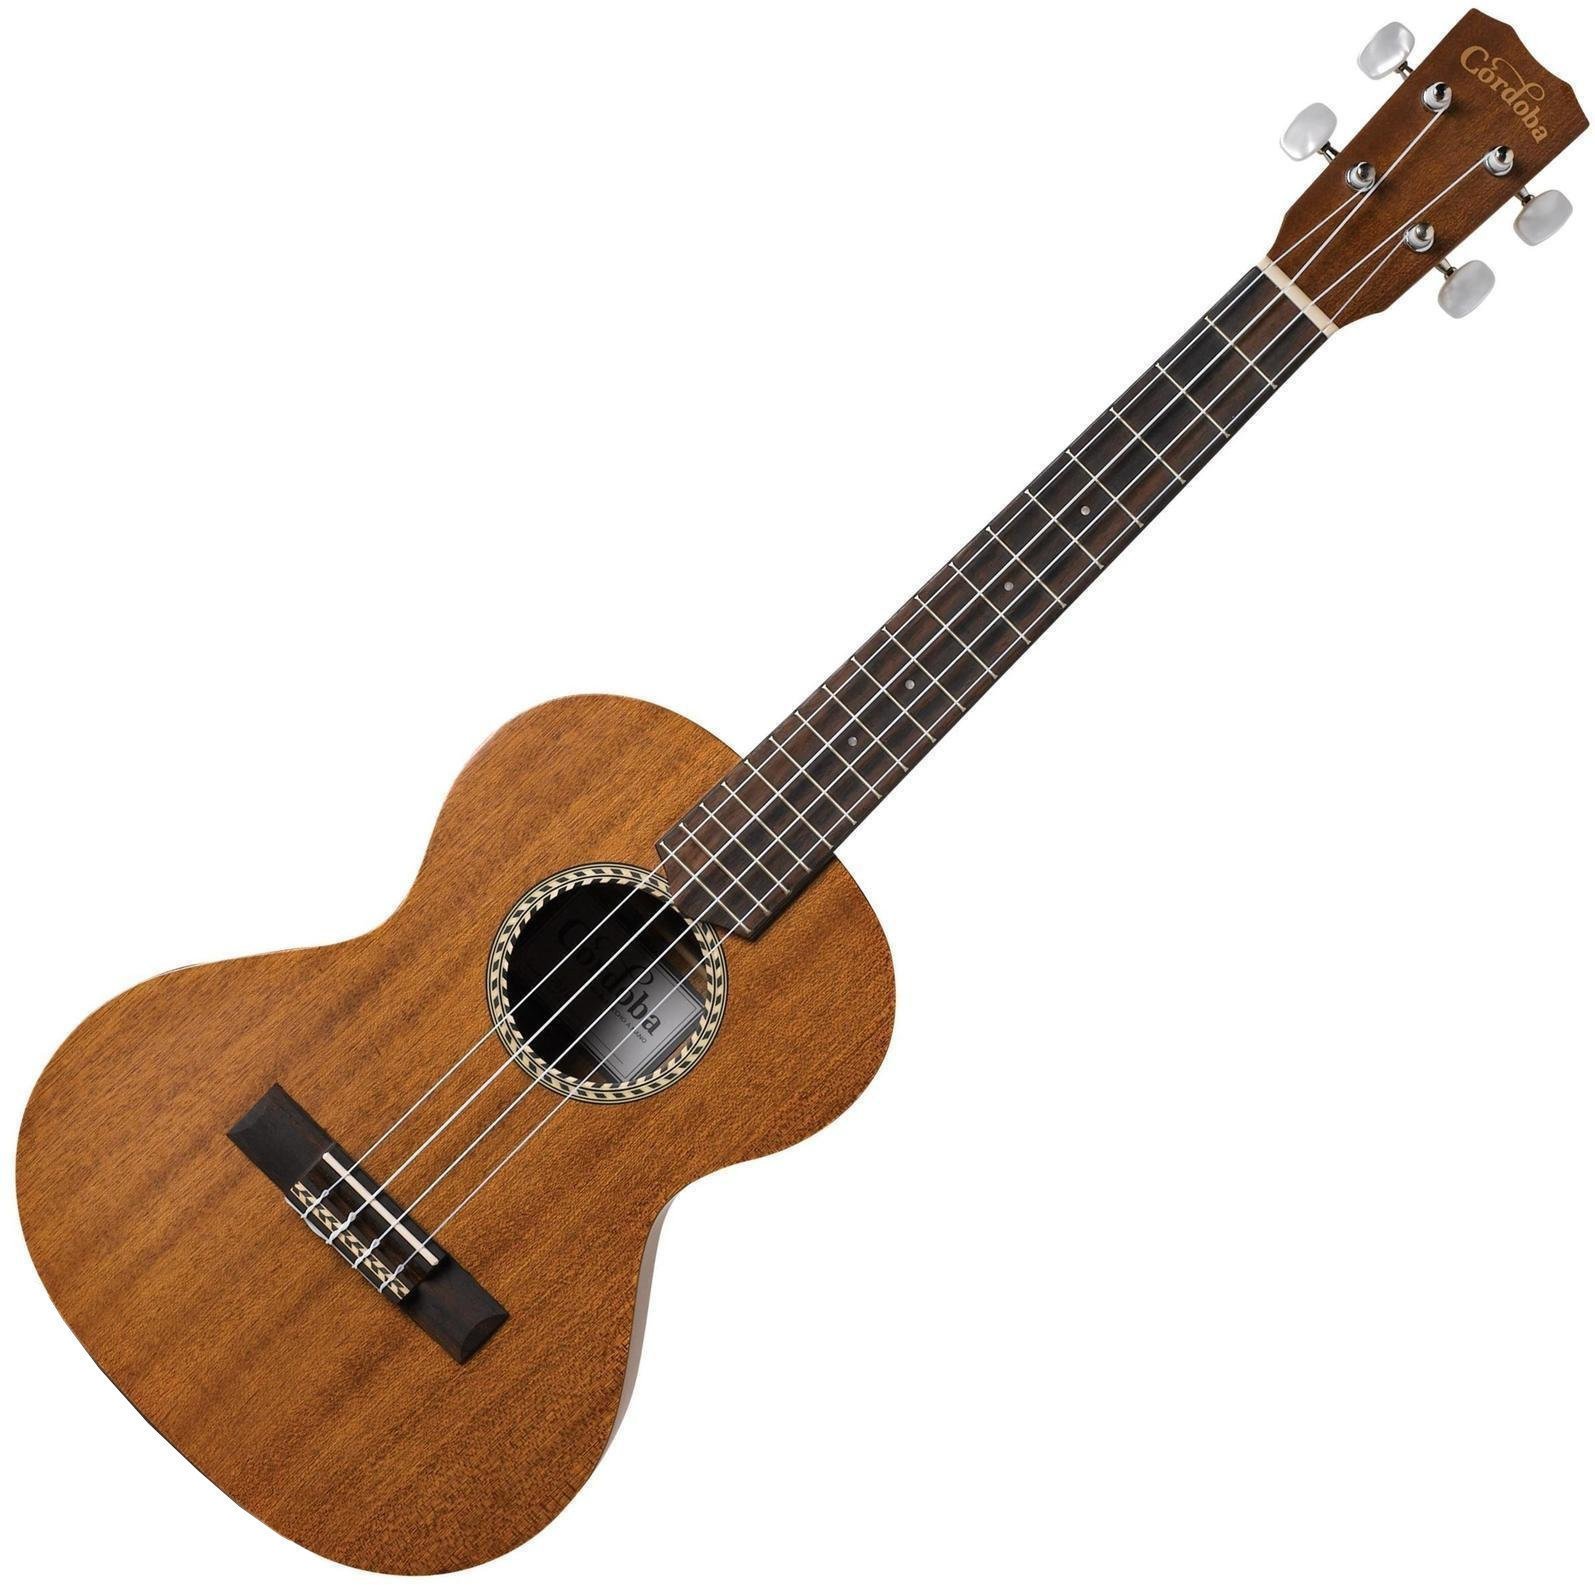 Tenor ukulele Cordoba 20TM Tenor ukulele Natural